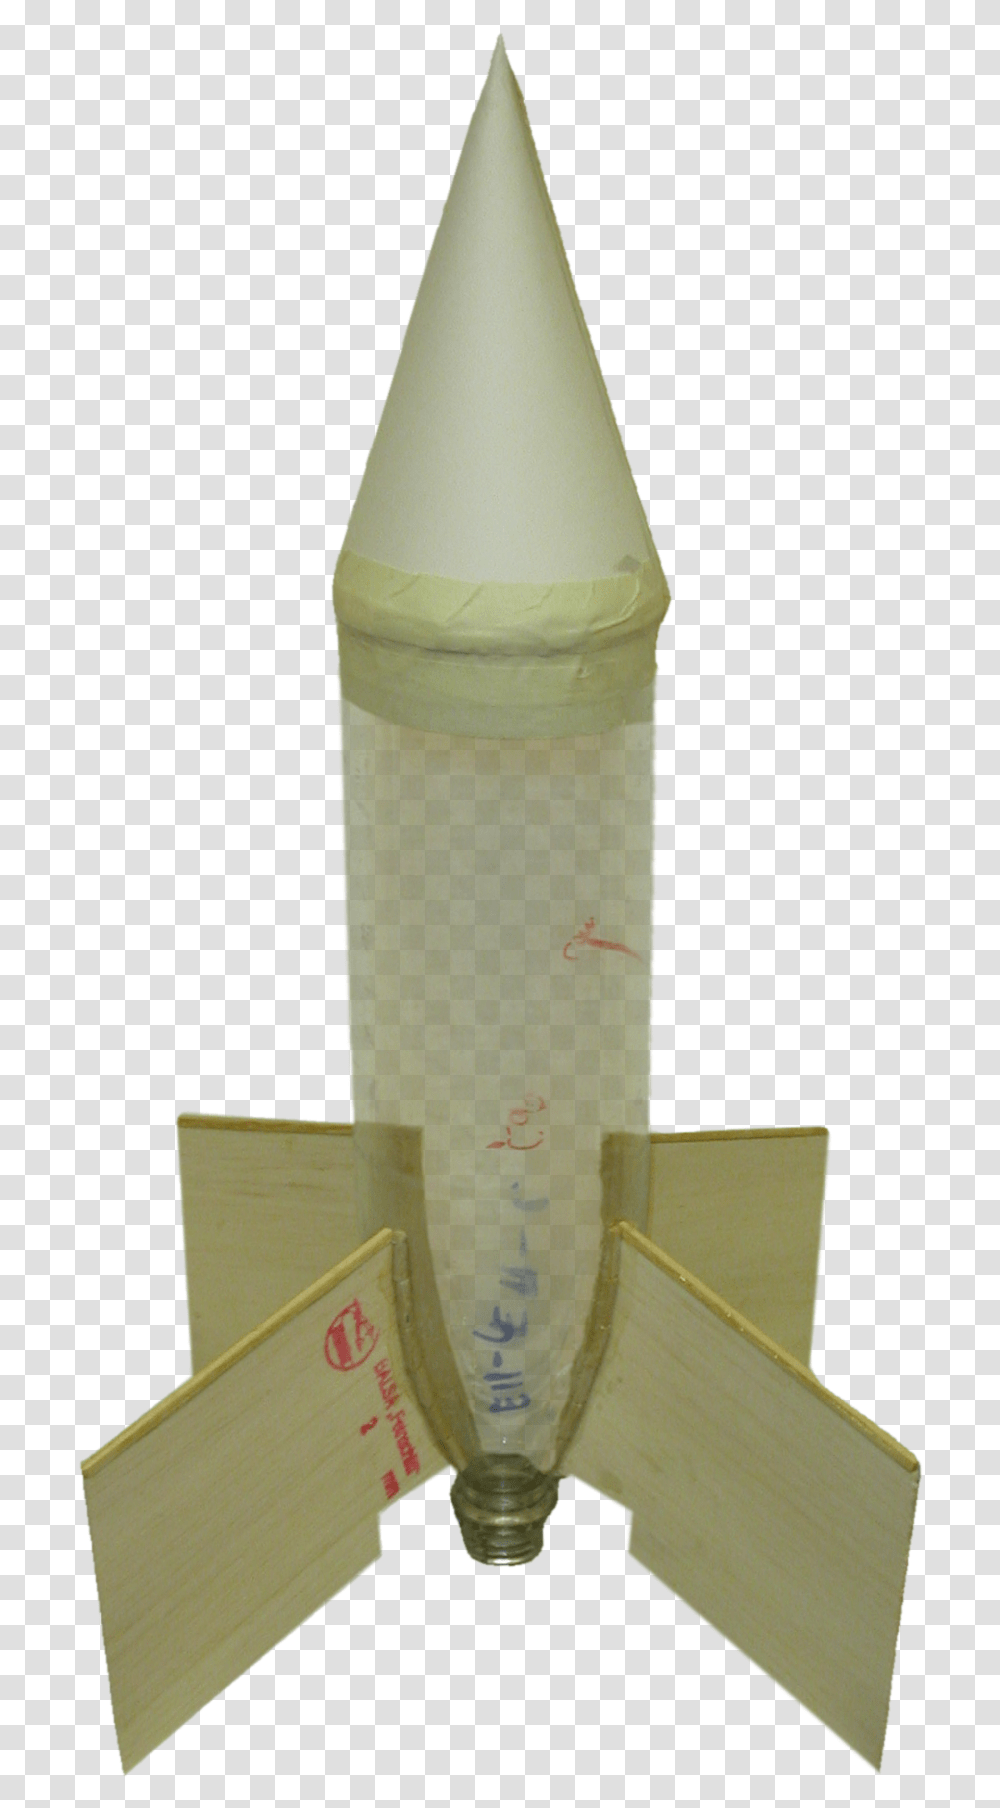 Empty Water Rocket Water Bottle Rocket Design, Vehicle, Transportation, Beverage Transparent Png